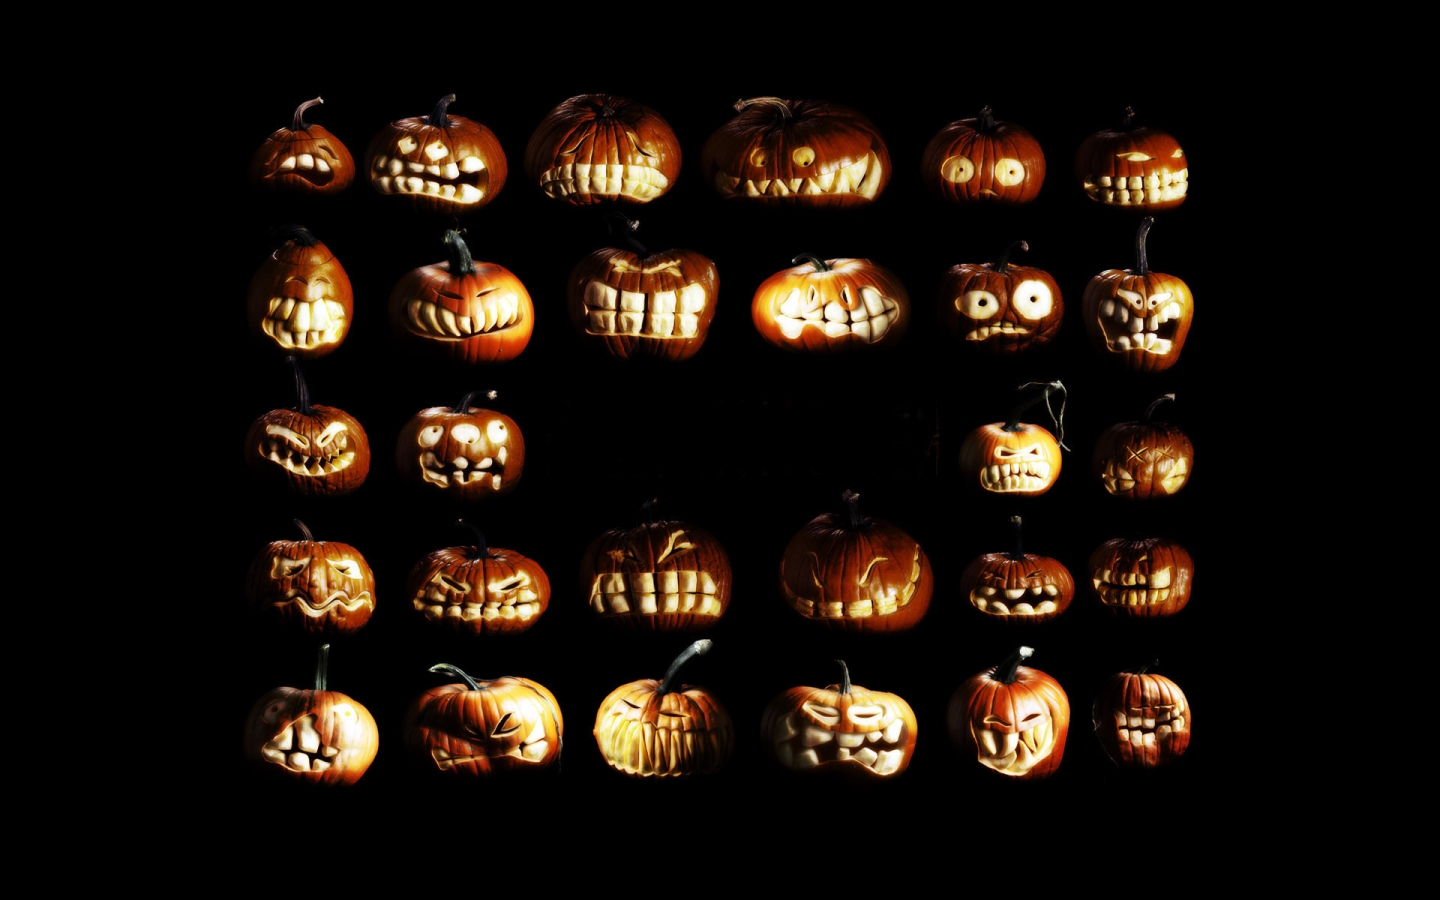 Pumpkin figures for Halloween for 1440 x 900 widescreen resolution